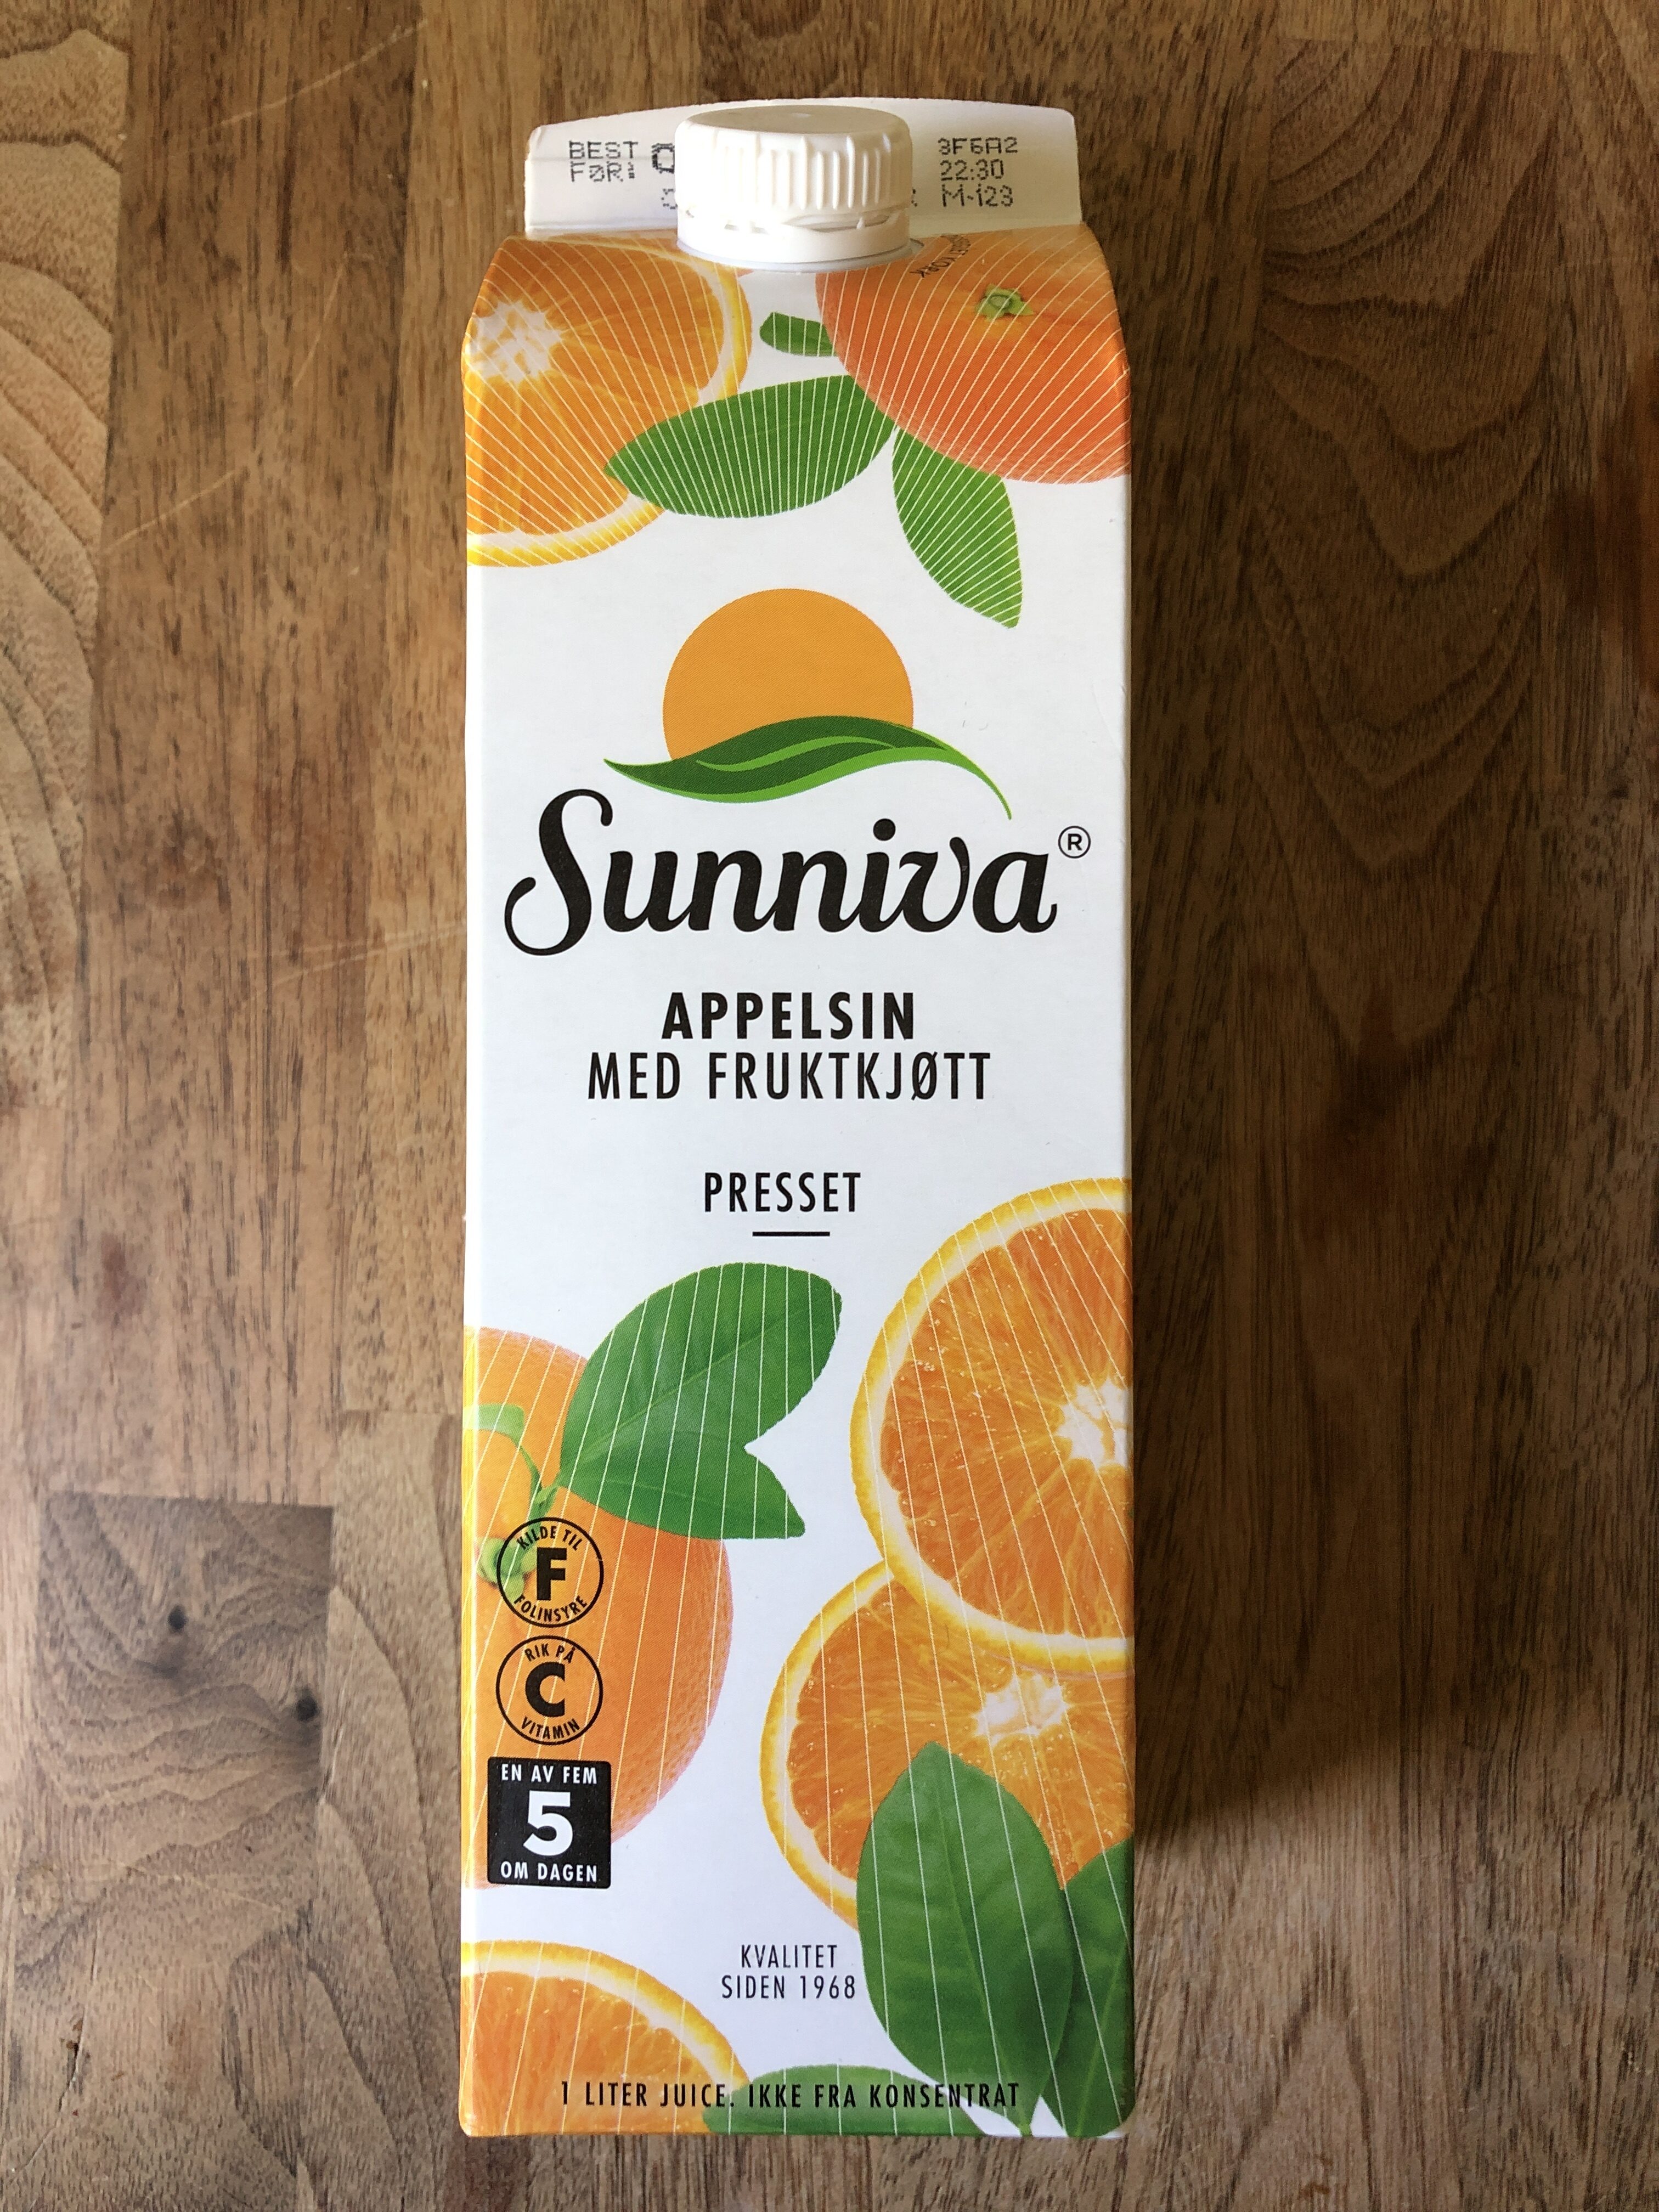 Appelsin med fruktkjøtt - Product